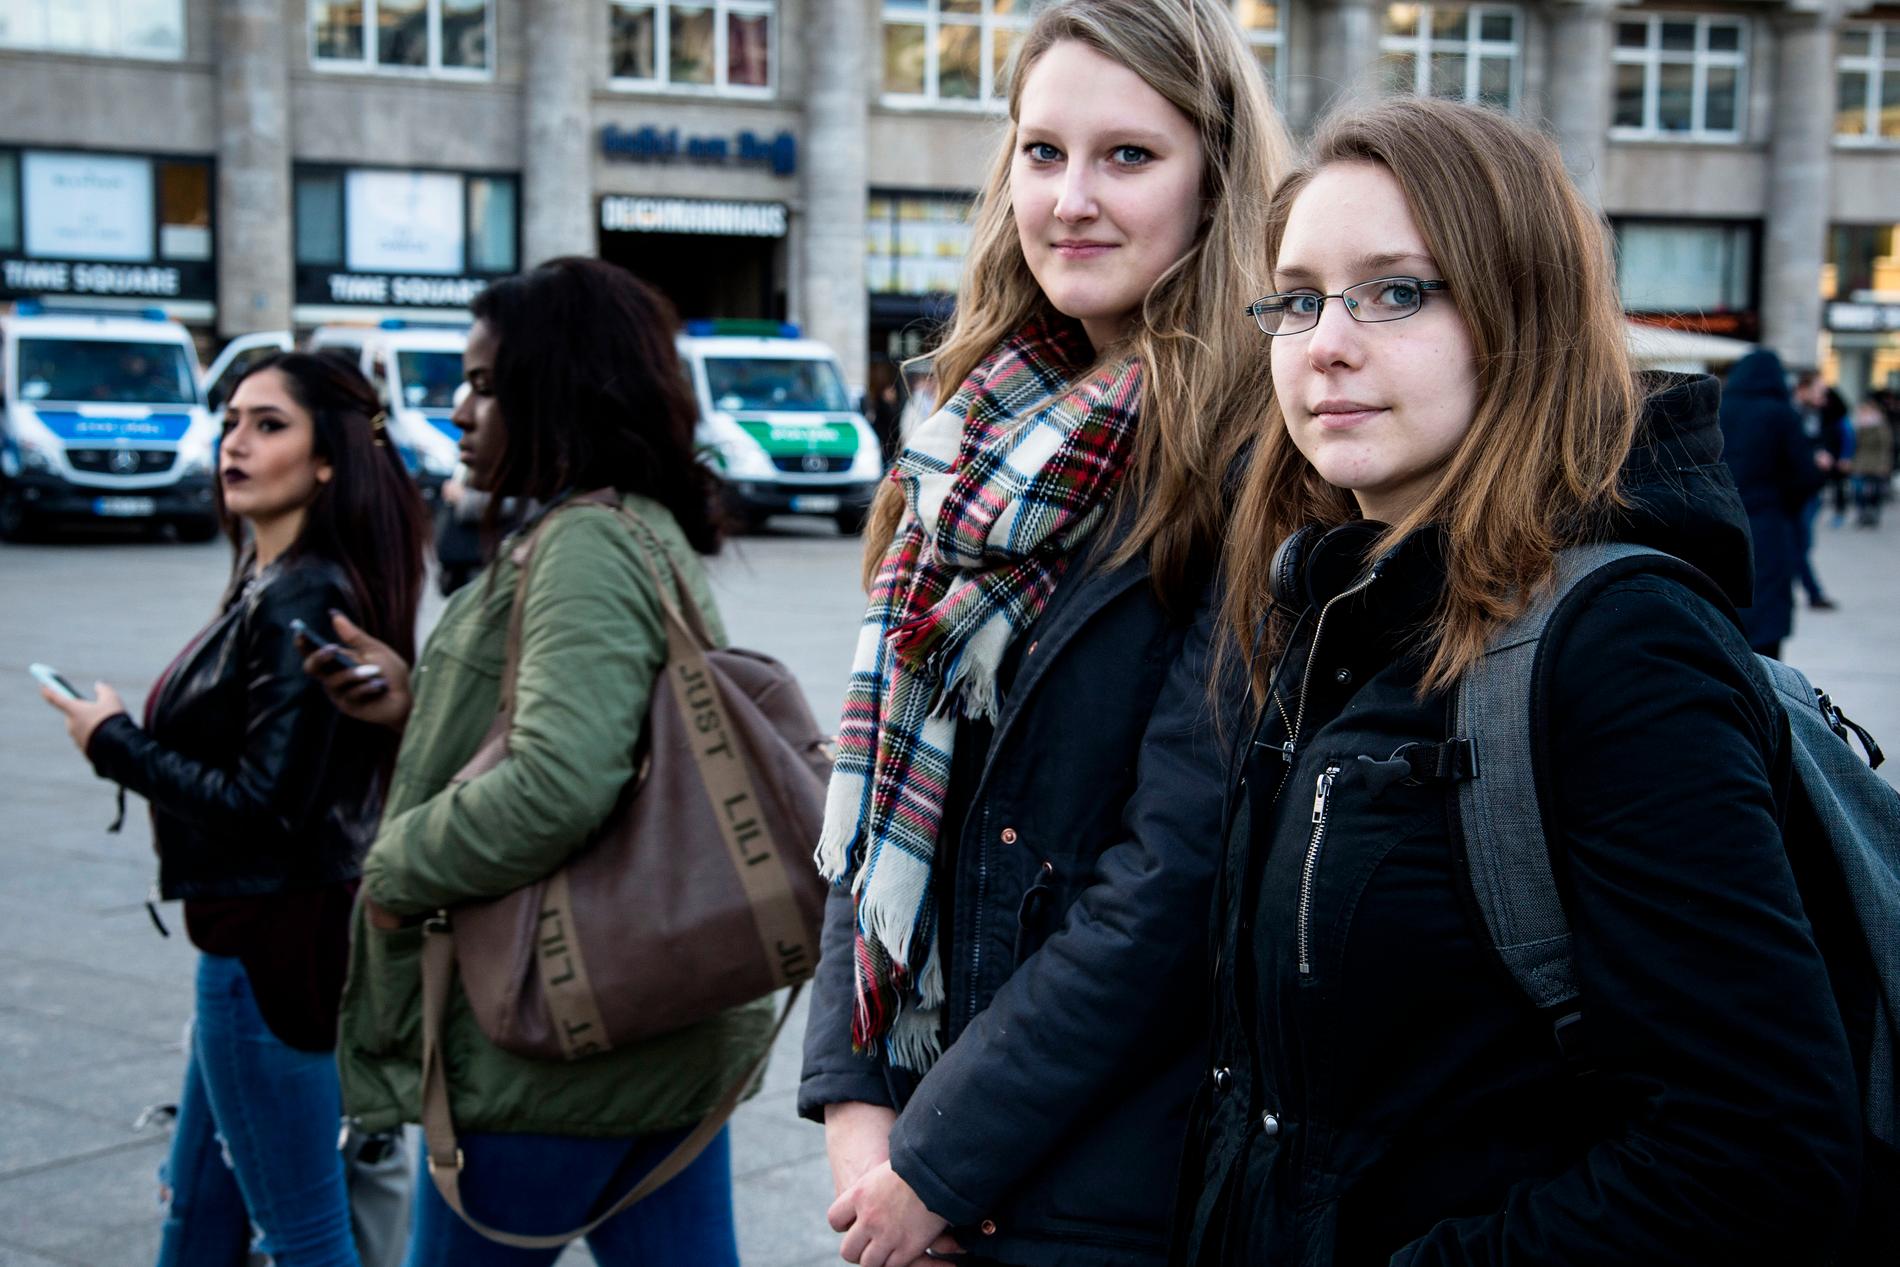 Fransisca Fischer, 17, närmast i bild från höger och lite bakom, vännen Maria Lena, 18.